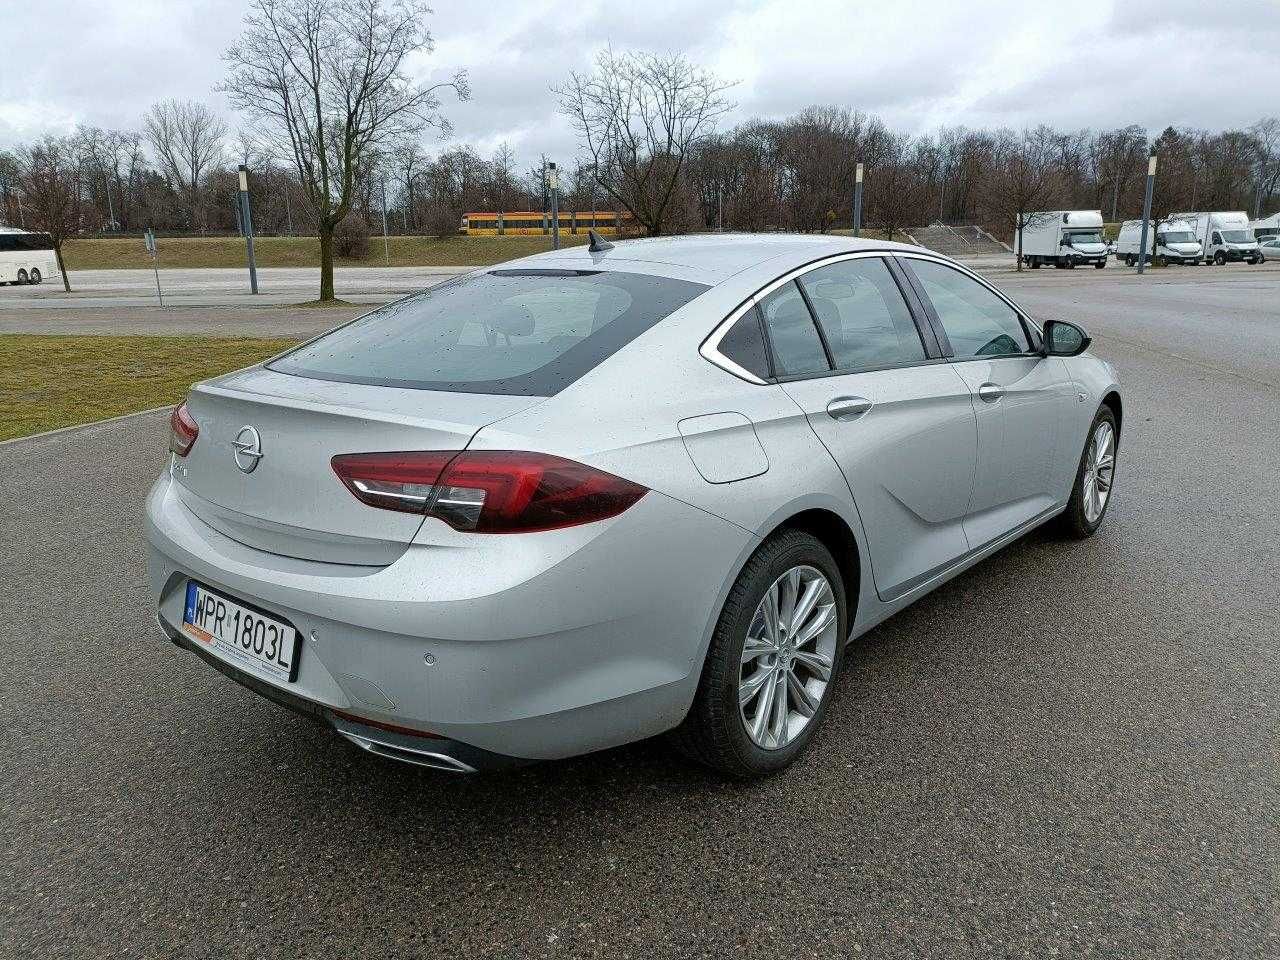 Opel Insignia, Wynajem długoterminowy samochodów, wypożyczalnia aut